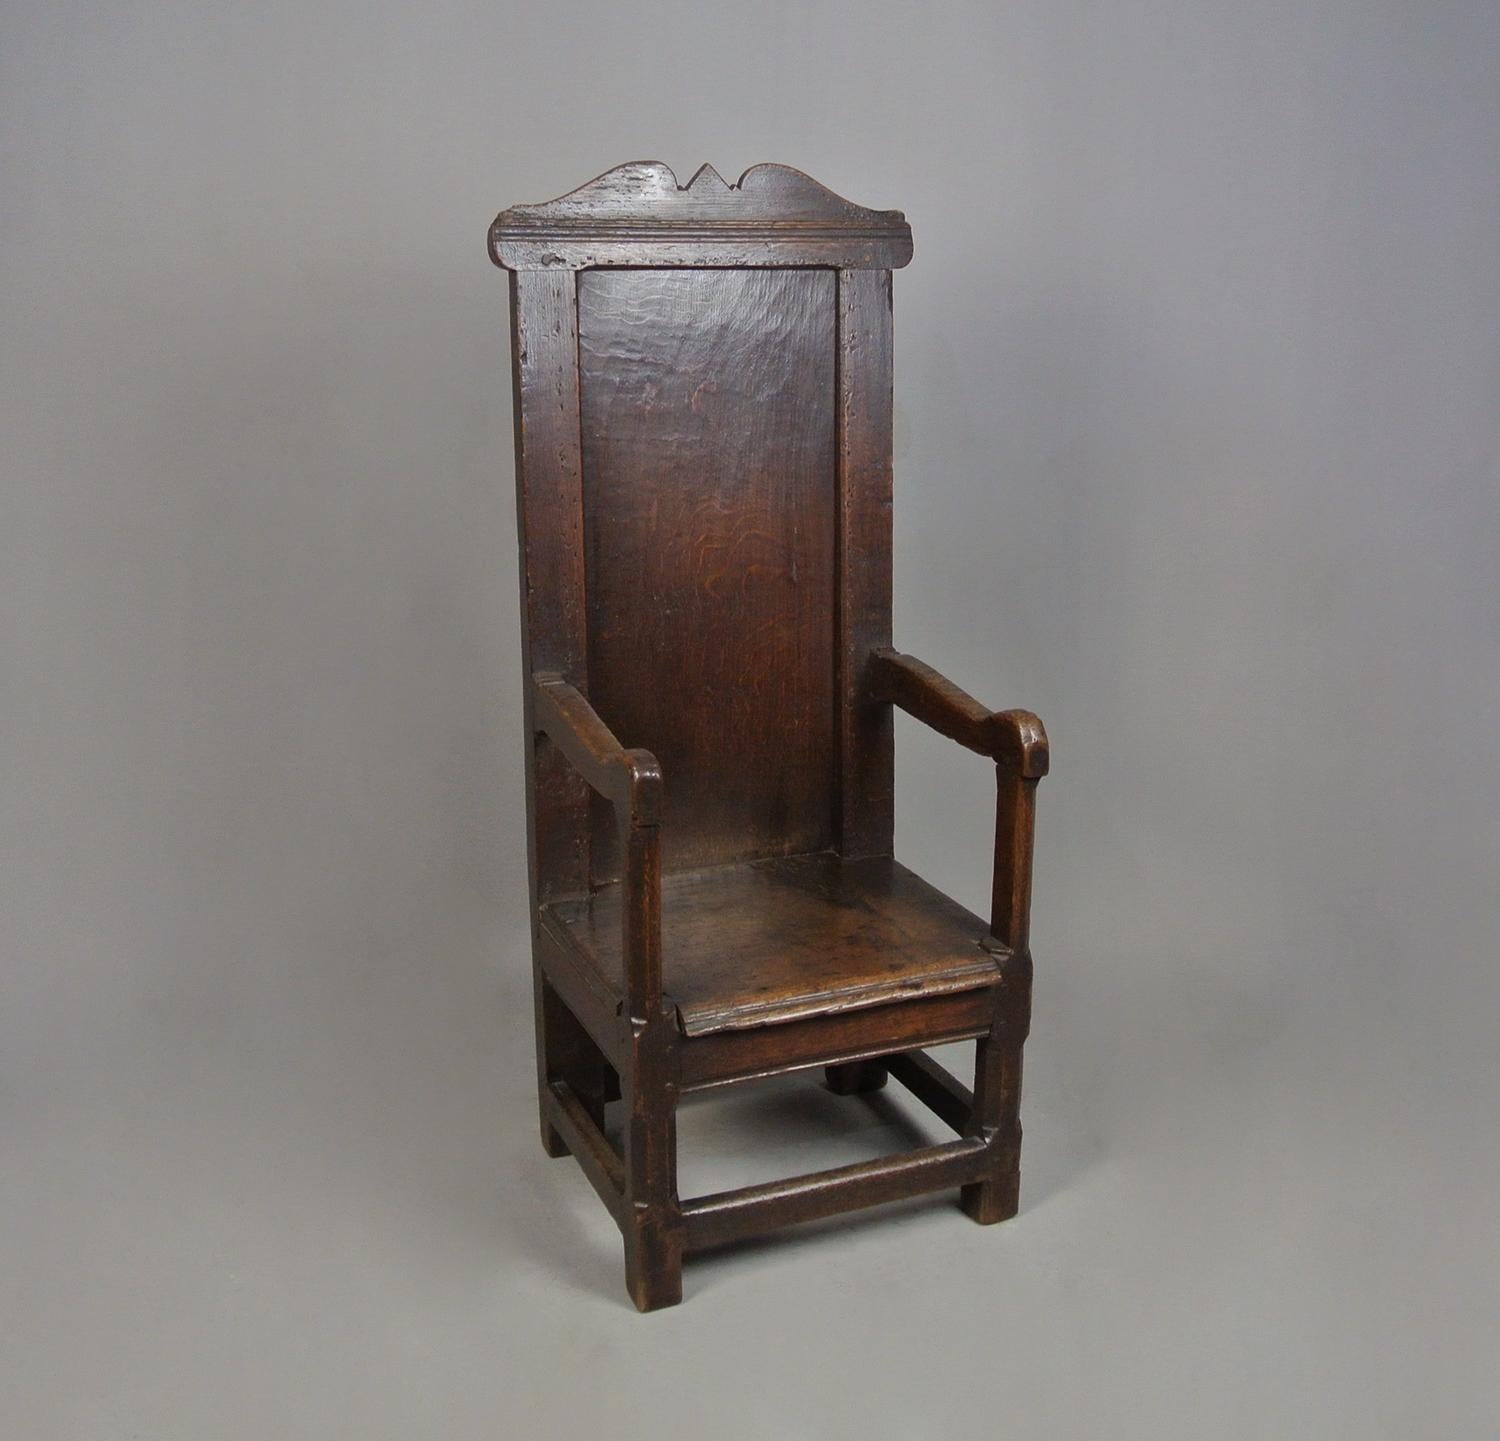 Une grande chaise en chêne (Pays de Galles vers 1620), ancienne et extrêmement rare, destinée à l'enfant d'une famille très riche.

Au début du XVIIe siècle, les grandes chaises étaient utilisées par le maître de maison, tandis que les autres